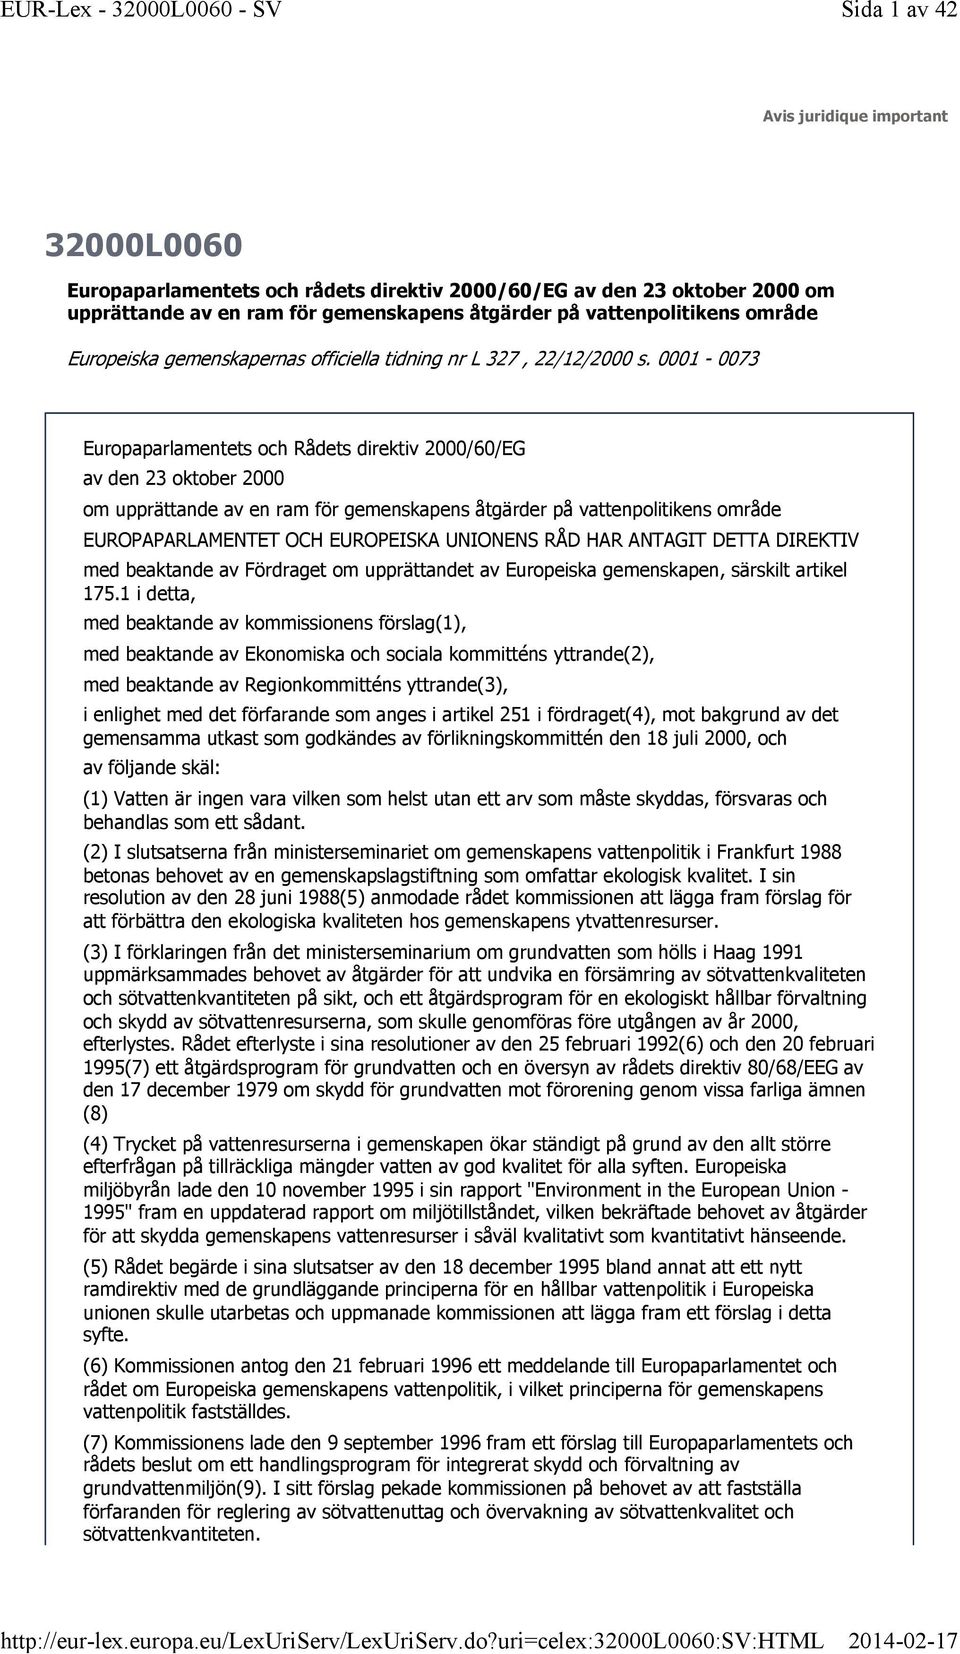 0001-0073 Europaparlamentets och Rådets direktiv 2000/60/EG av den 23 oktober 2000 om upprättande av en ram för gemenskapens åtgärder på vattenpolitikens område EUROPAPARLAMENTET OCH EUROPEISKA